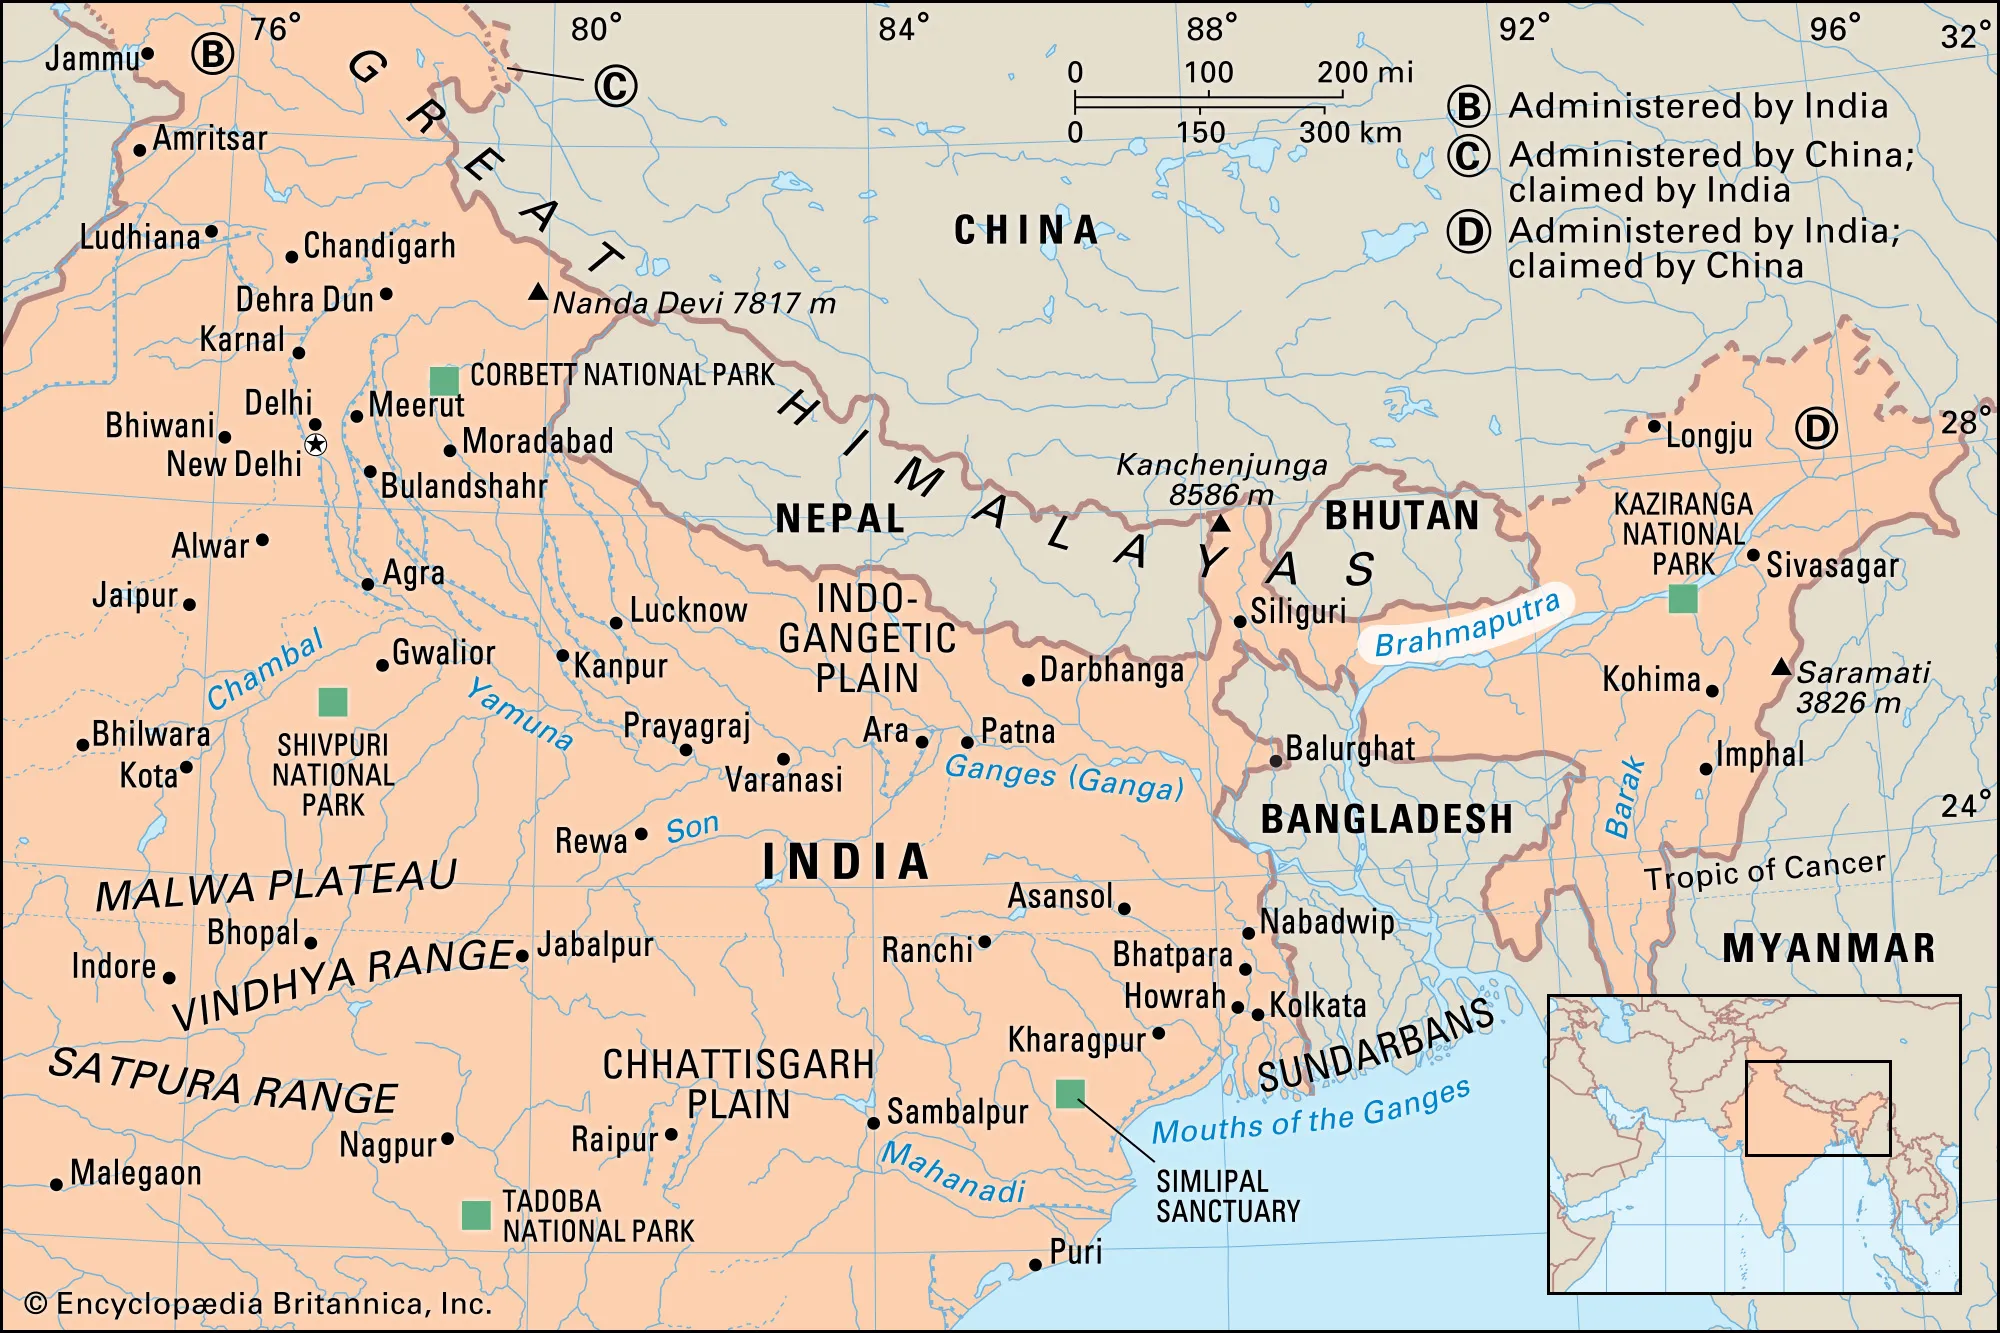 Brahmaputra River System ब्रह्मपुत्र नदी प्रणाली - उत्तरी तट , दक्षिणी तट की सहायक नदियाँ